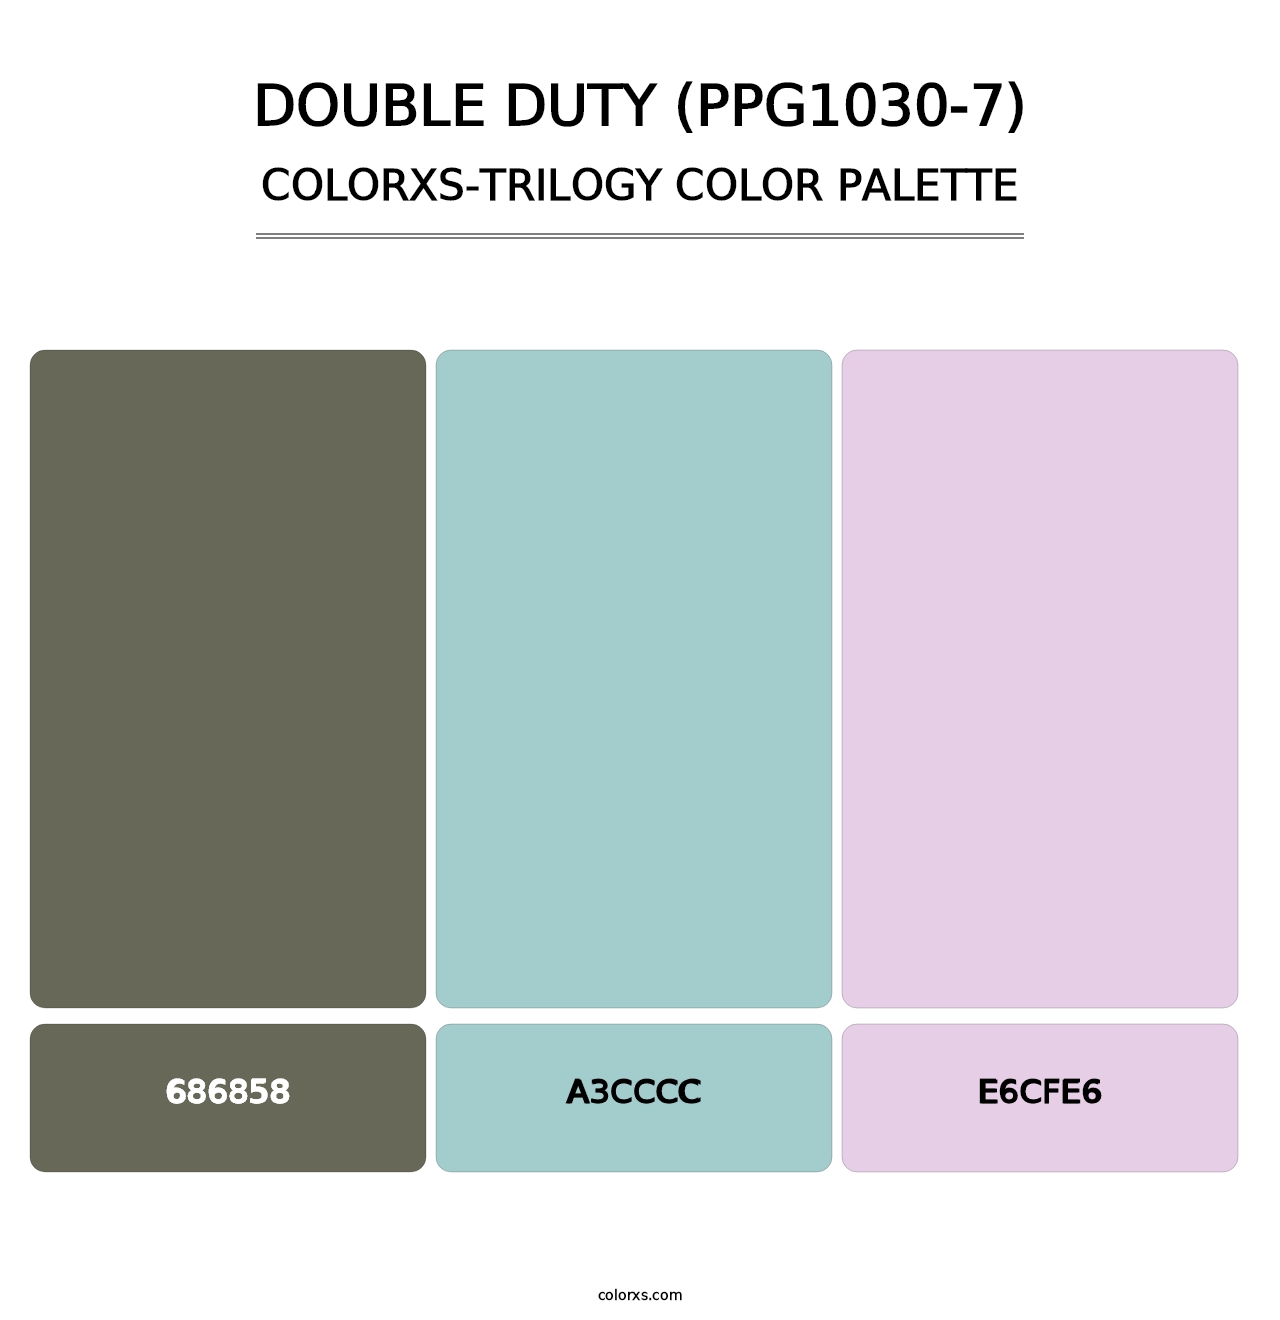 Double Duty (PPG1030-7) - Colorxs Trilogy Palette